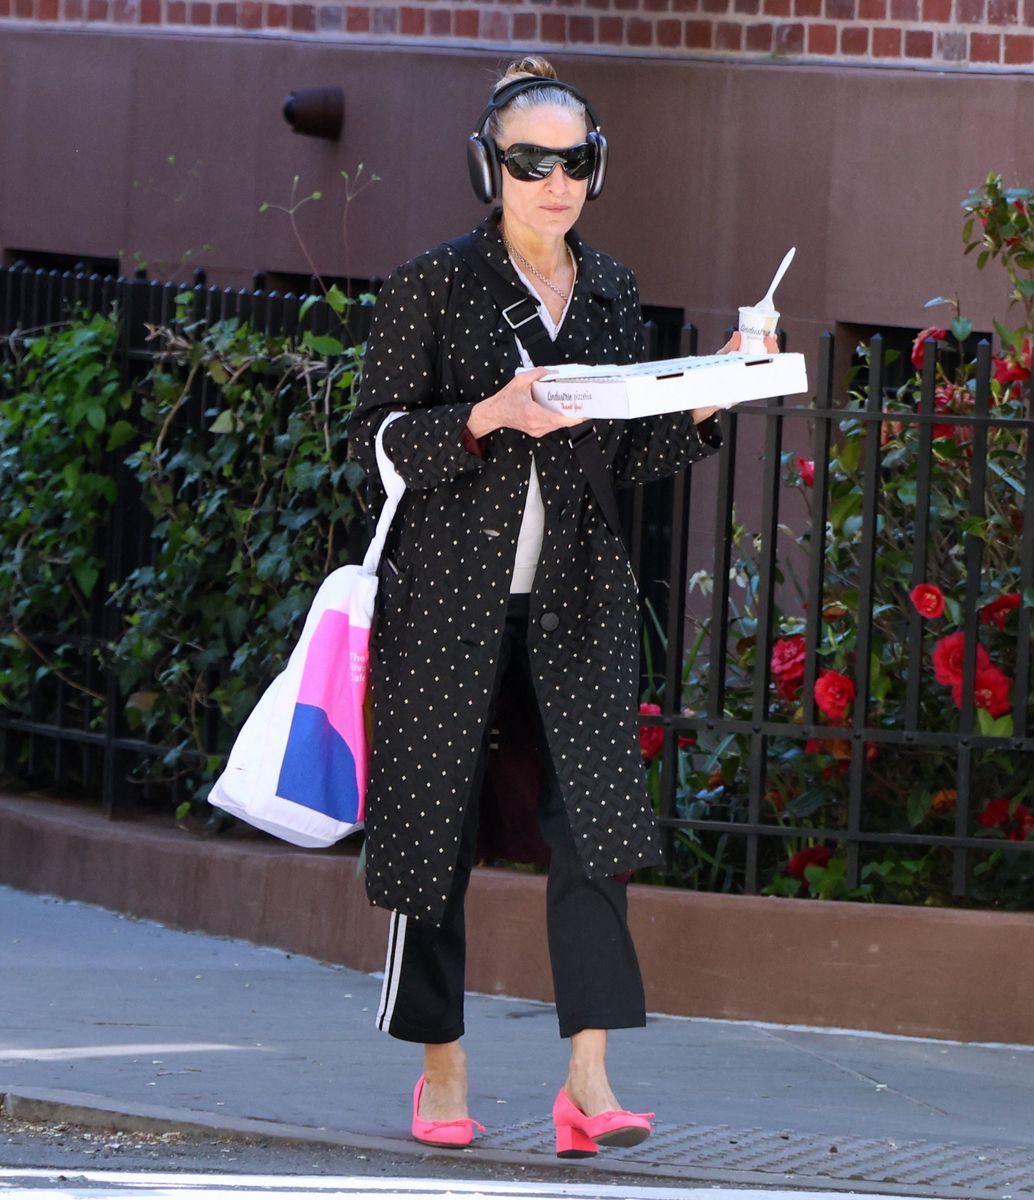 sarah jessica parker se convierte en carrie bradshaw con chándal de adidas y zapatos de tacón rosas por nueva york